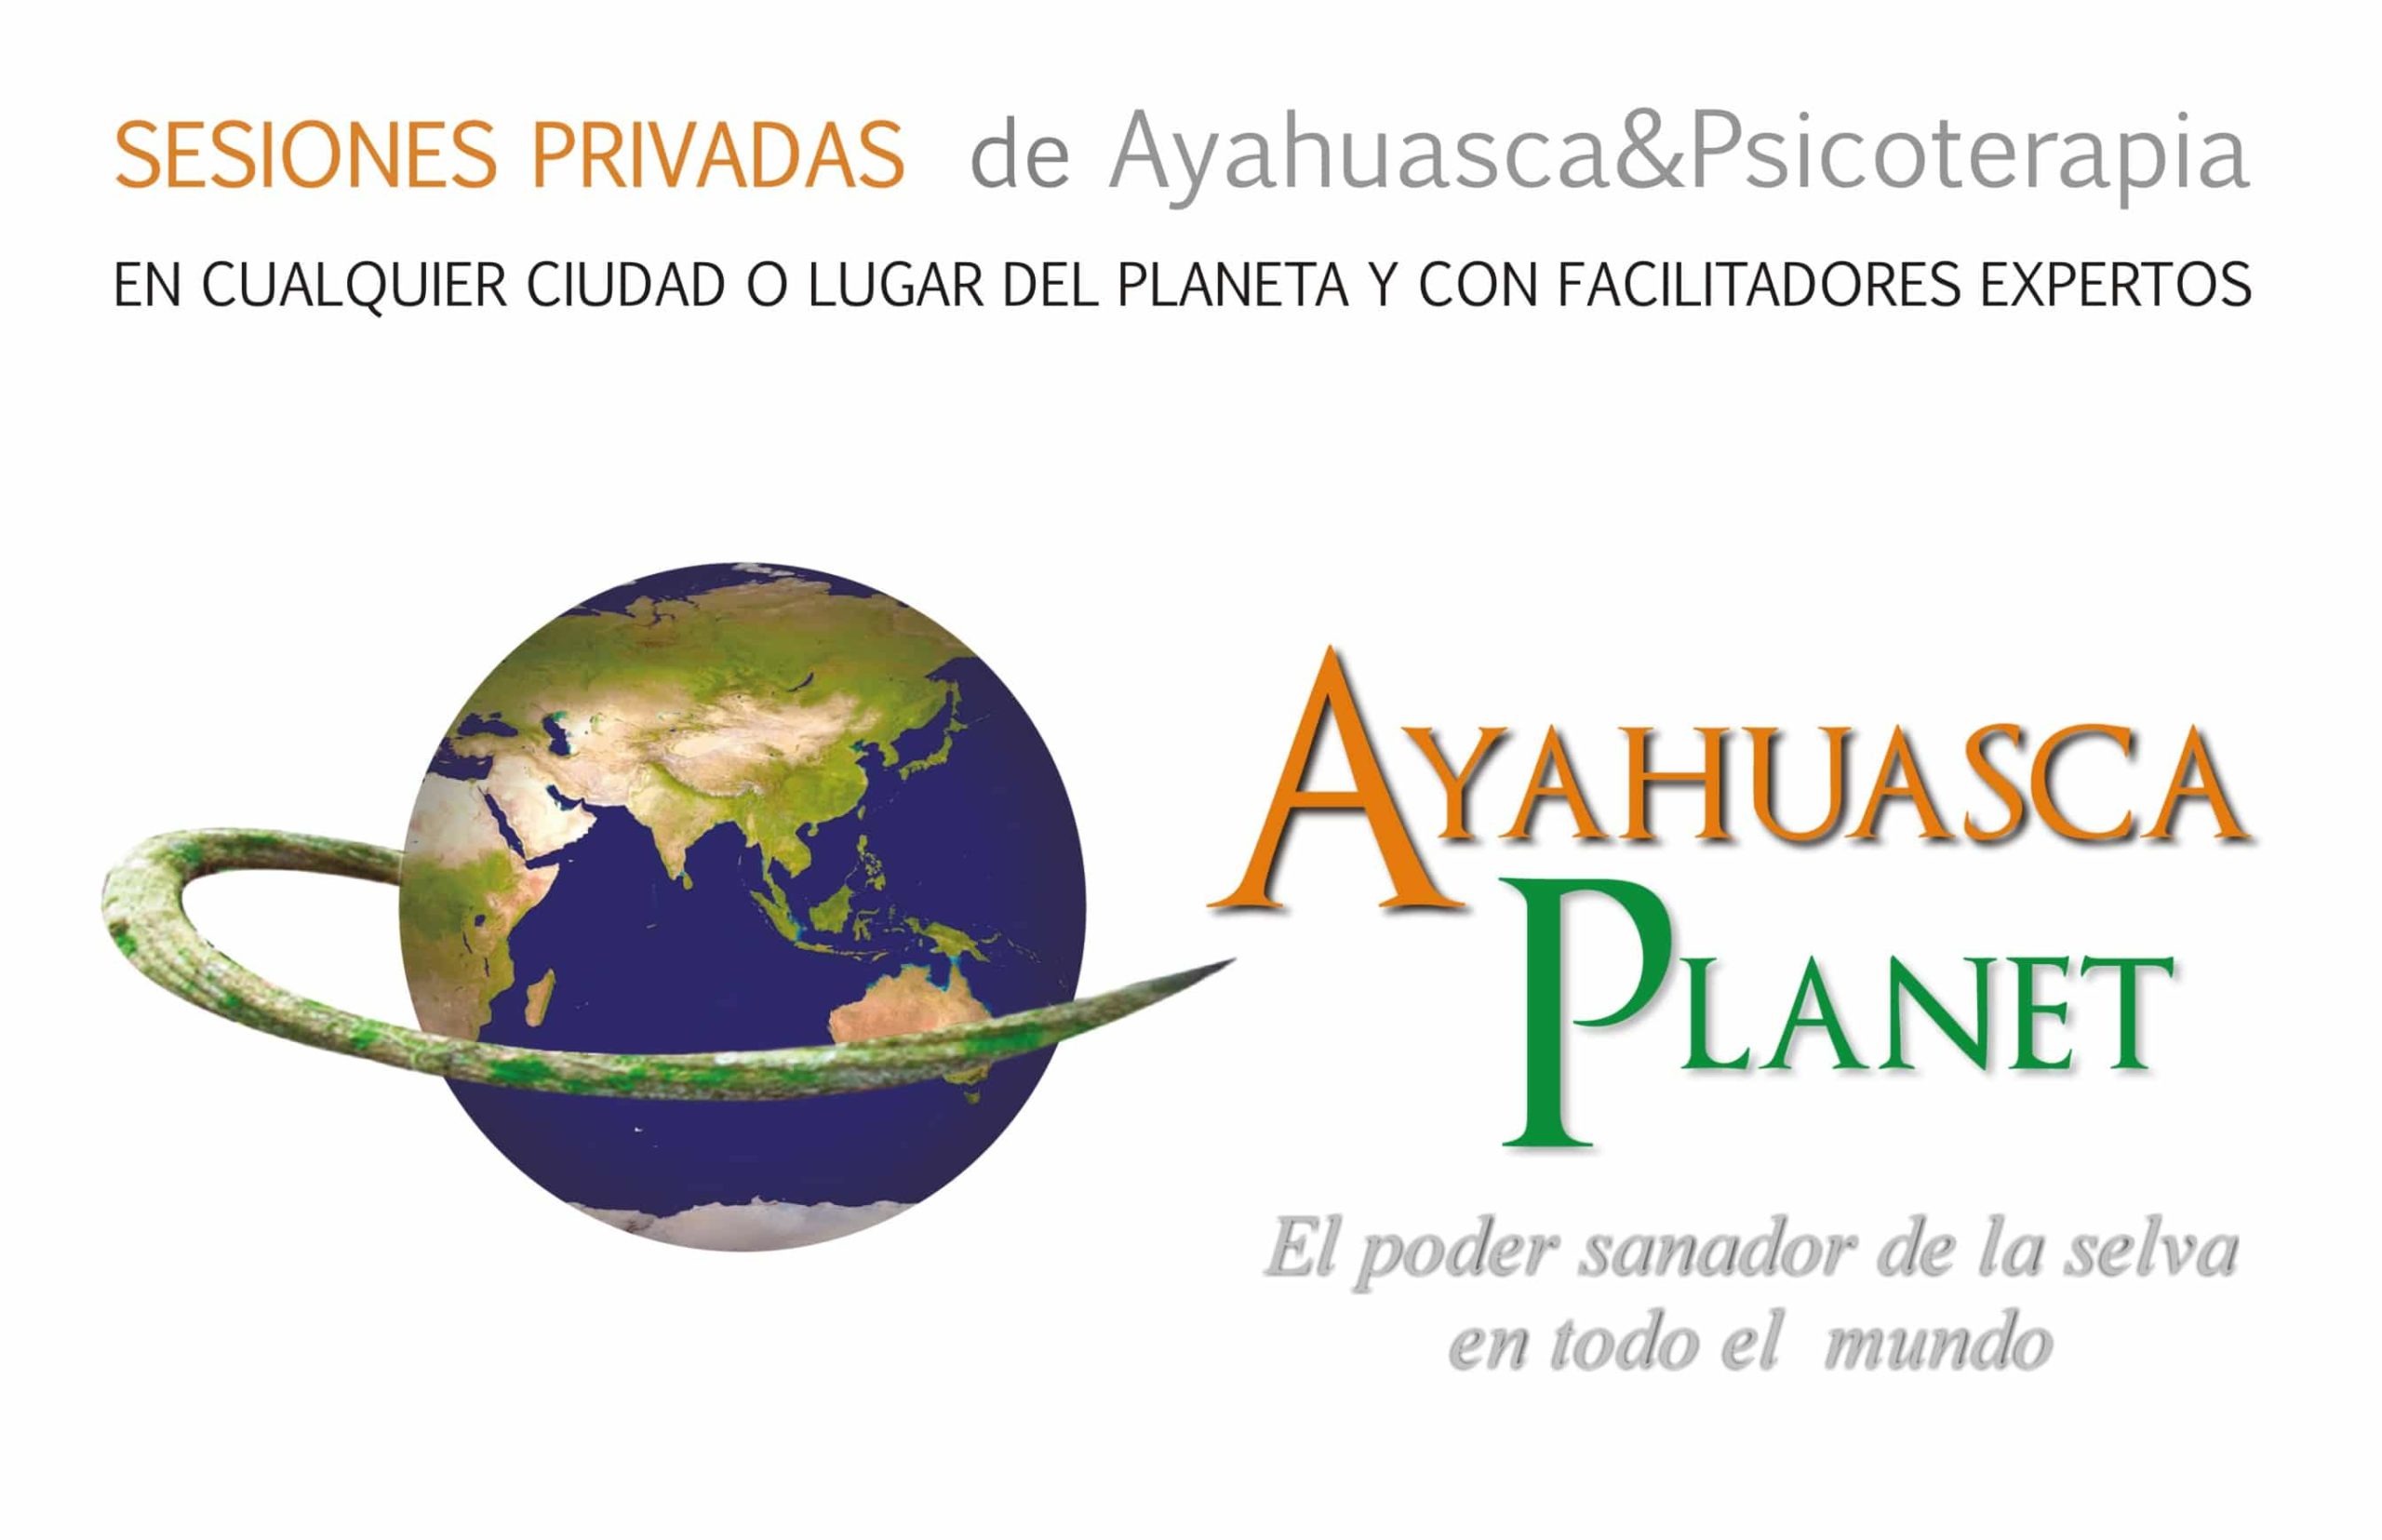 ayahuasca planet sesiones privadas